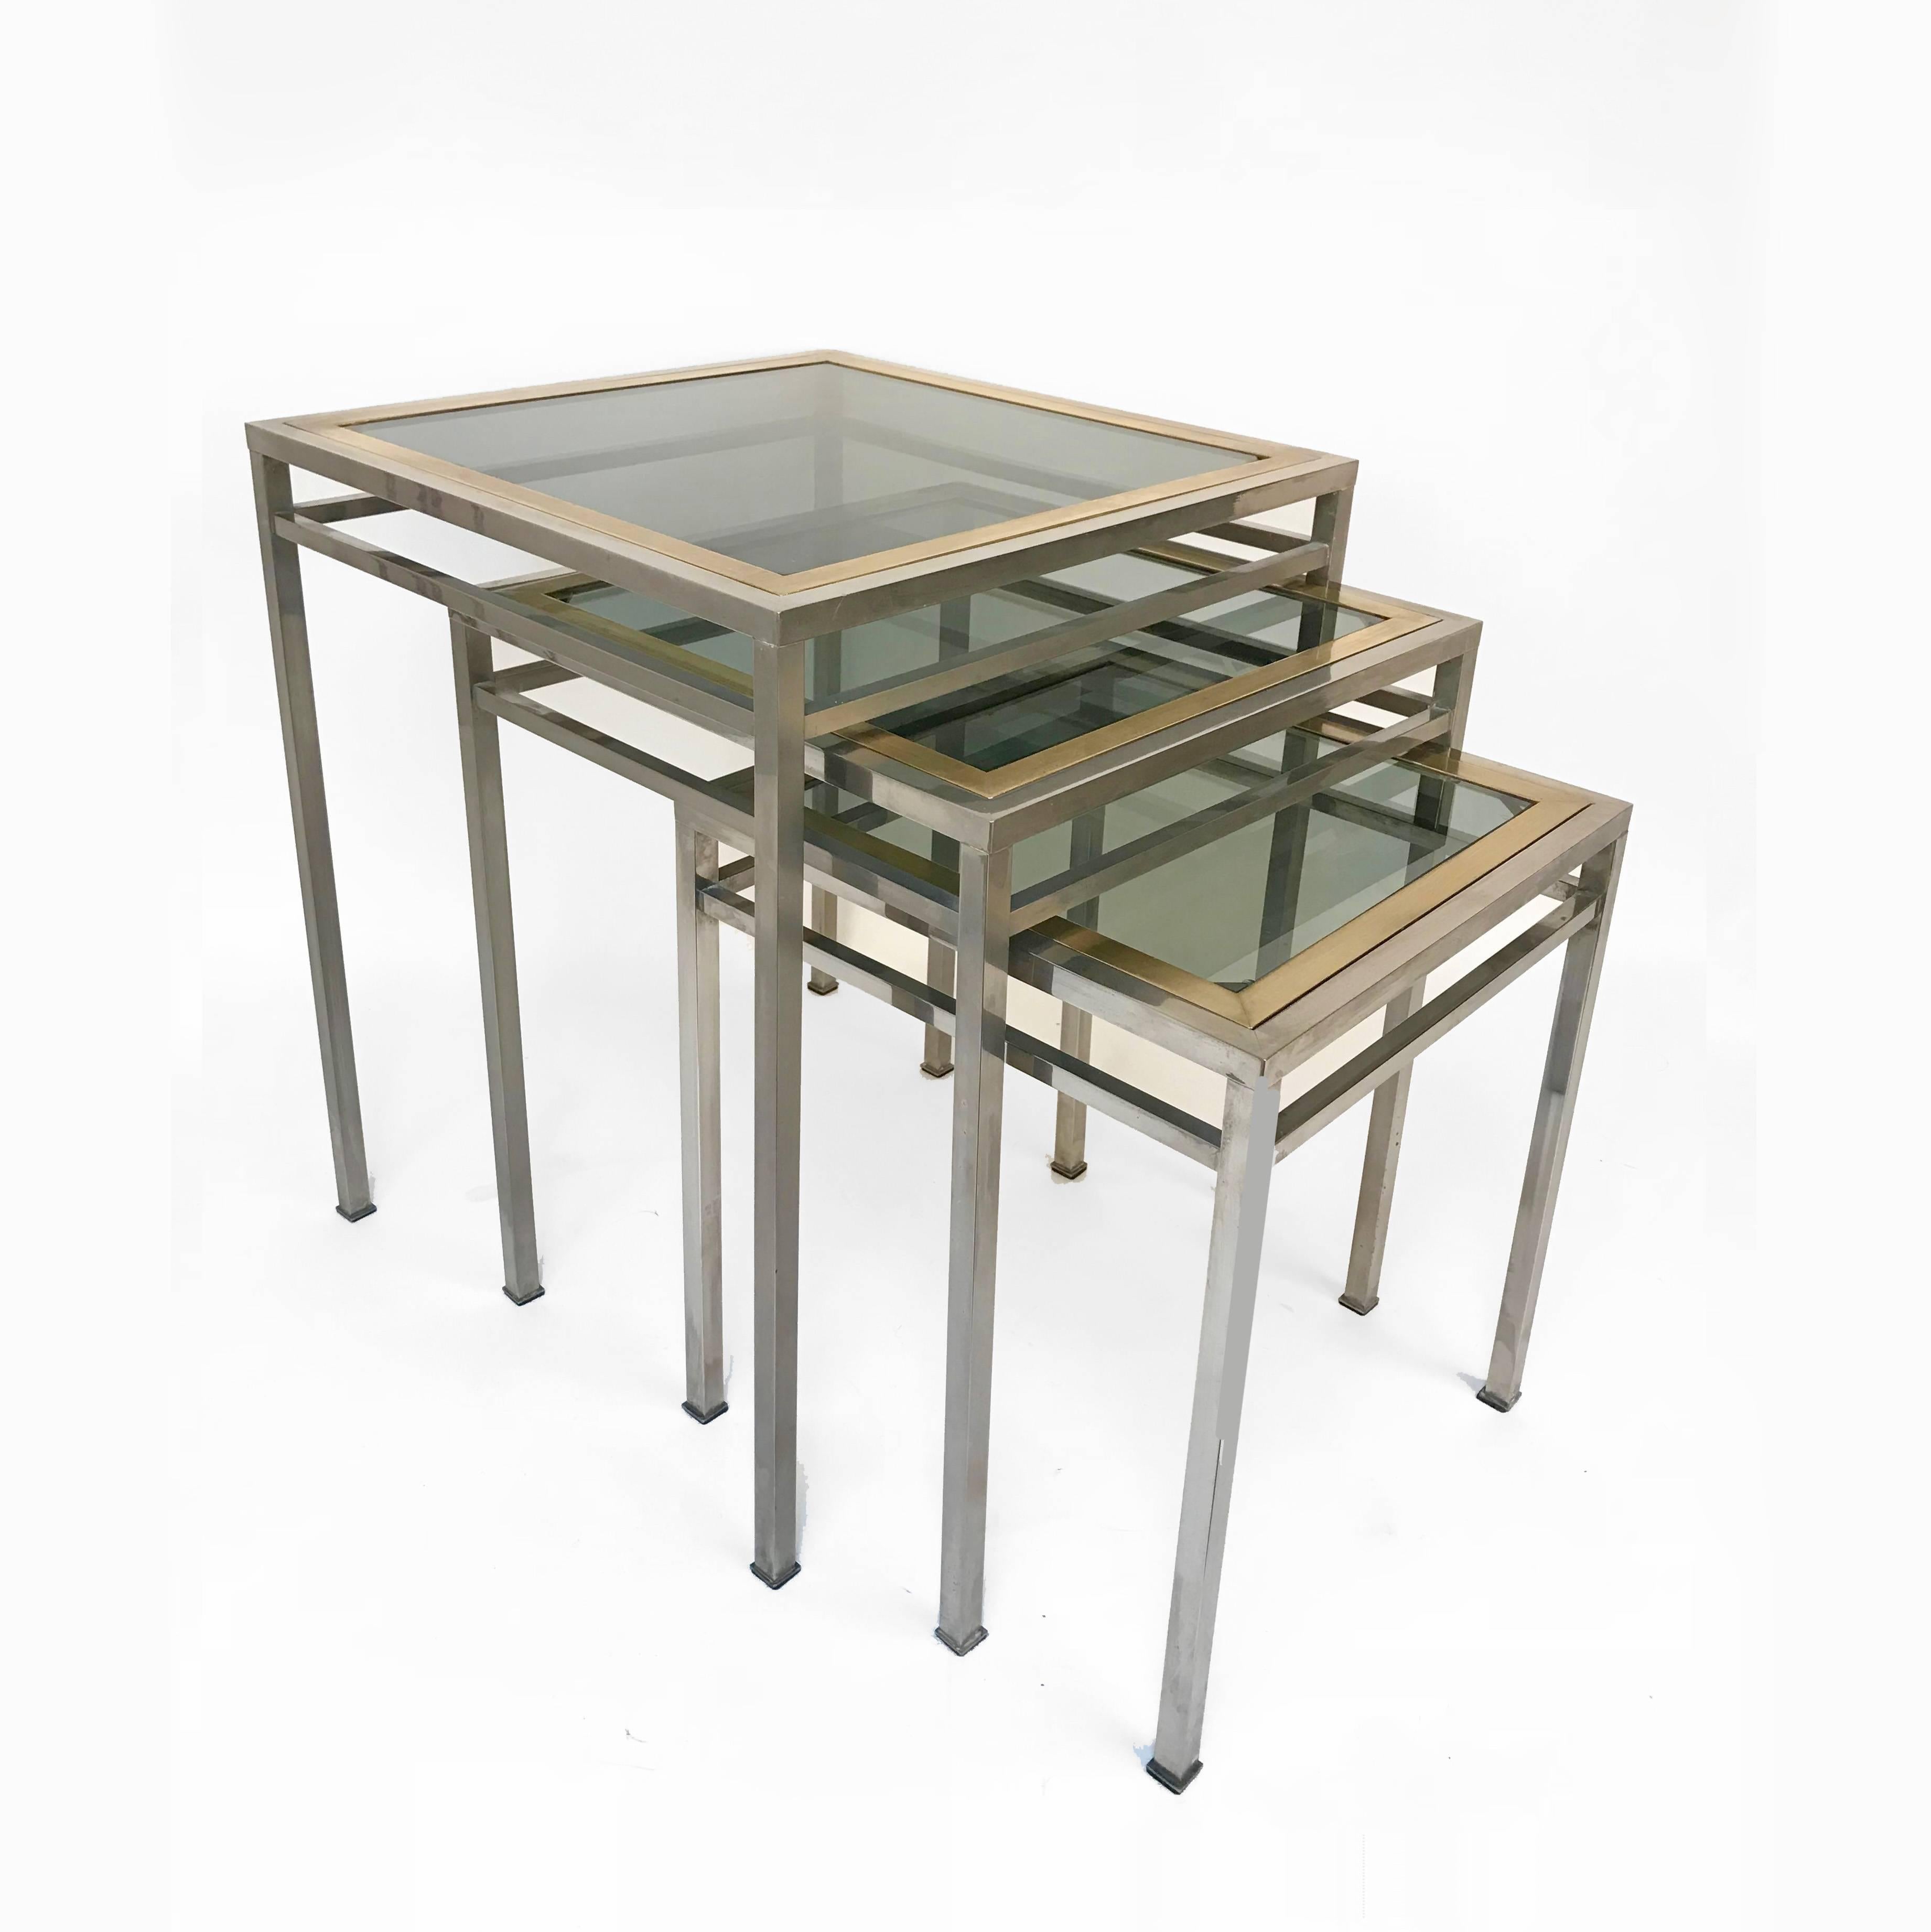 Drei wunderbare Schachteltische aus Messing und Kristallglas. Dieses unglaubliche Set wurde in den 1970er Jahren in Italien hergestellt.

Diese drei Tische sind ein ikonisches Beispiel für die Linien und Materialien des Mid-Century Modern, mit der